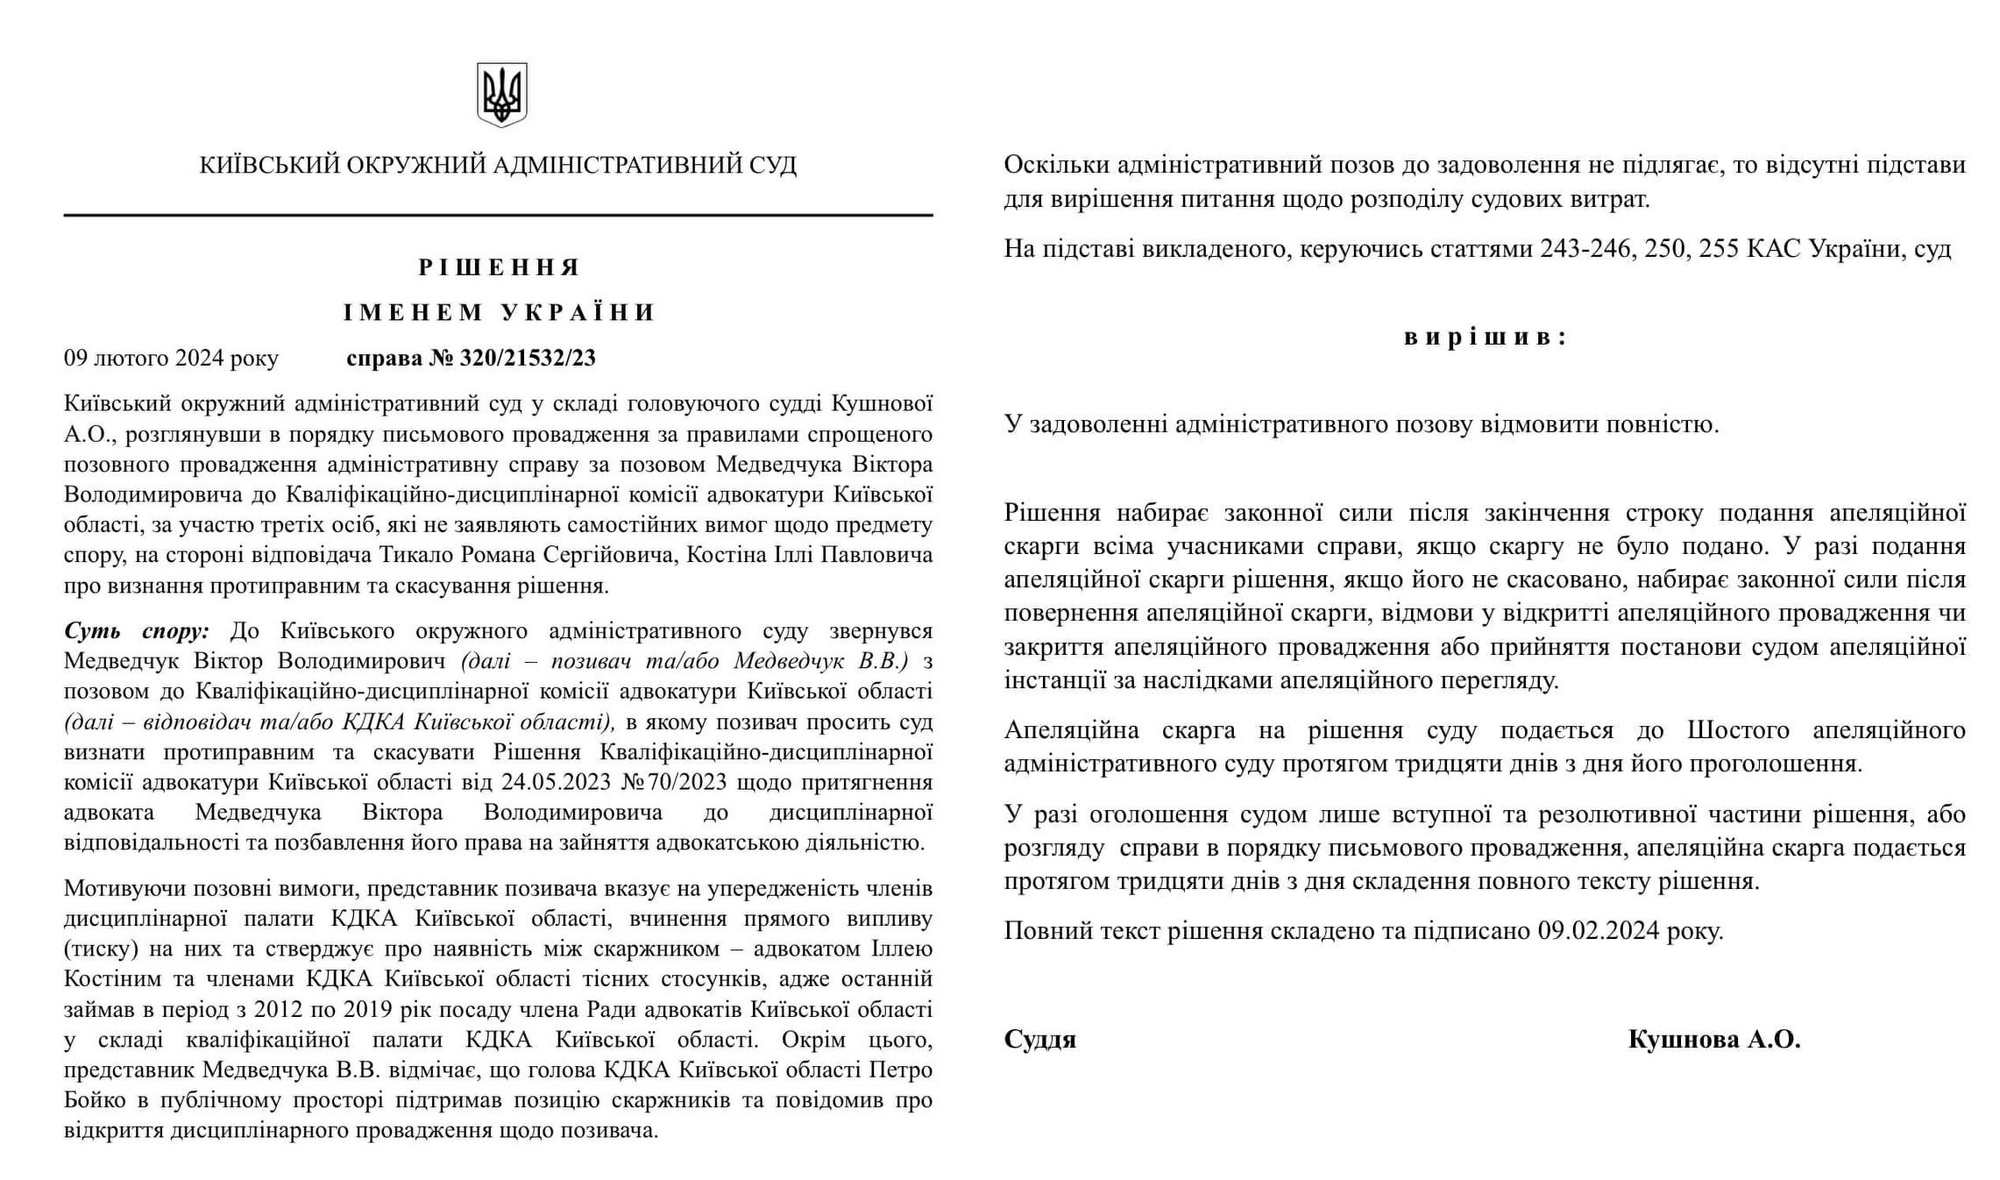 Киевский окружной админсуд отказал Виктору Медведчуку в обновлении свидетельства адвоката